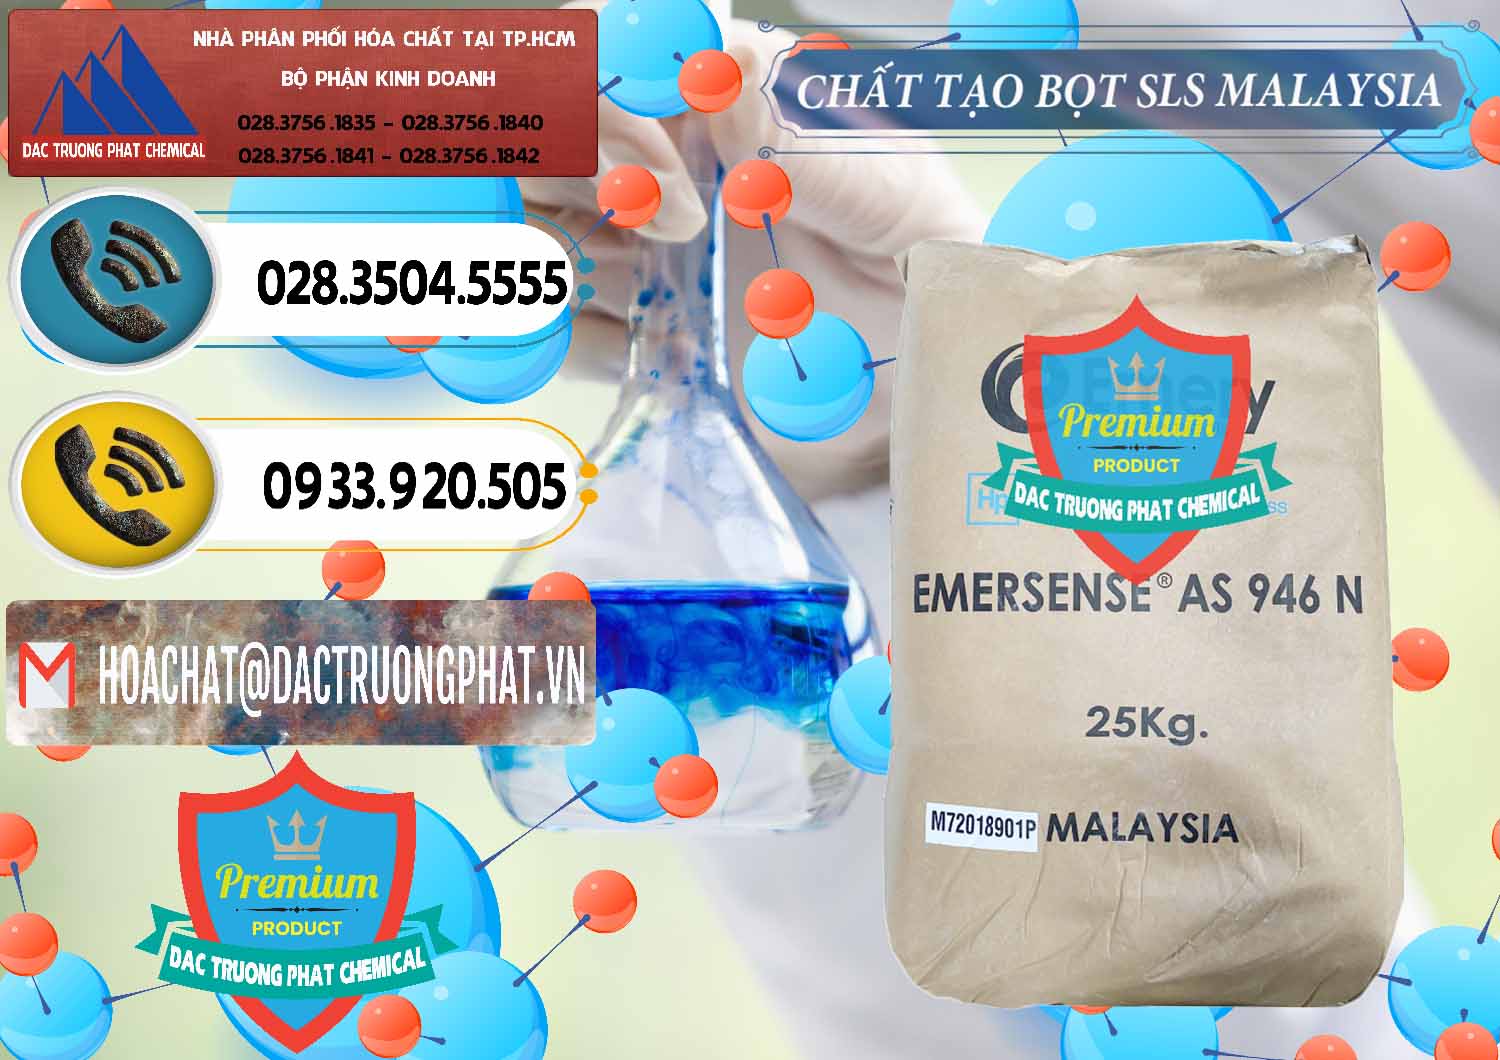 Đơn vị chuyên bán và phân phối Chất Tạo Bọt SLS Emery - Emersense AS 946N Mã Lai Malaysia - 0423 - Đơn vị cung cấp & nhập khẩu hóa chất tại TP.HCM - hoachatdetnhuom.vn